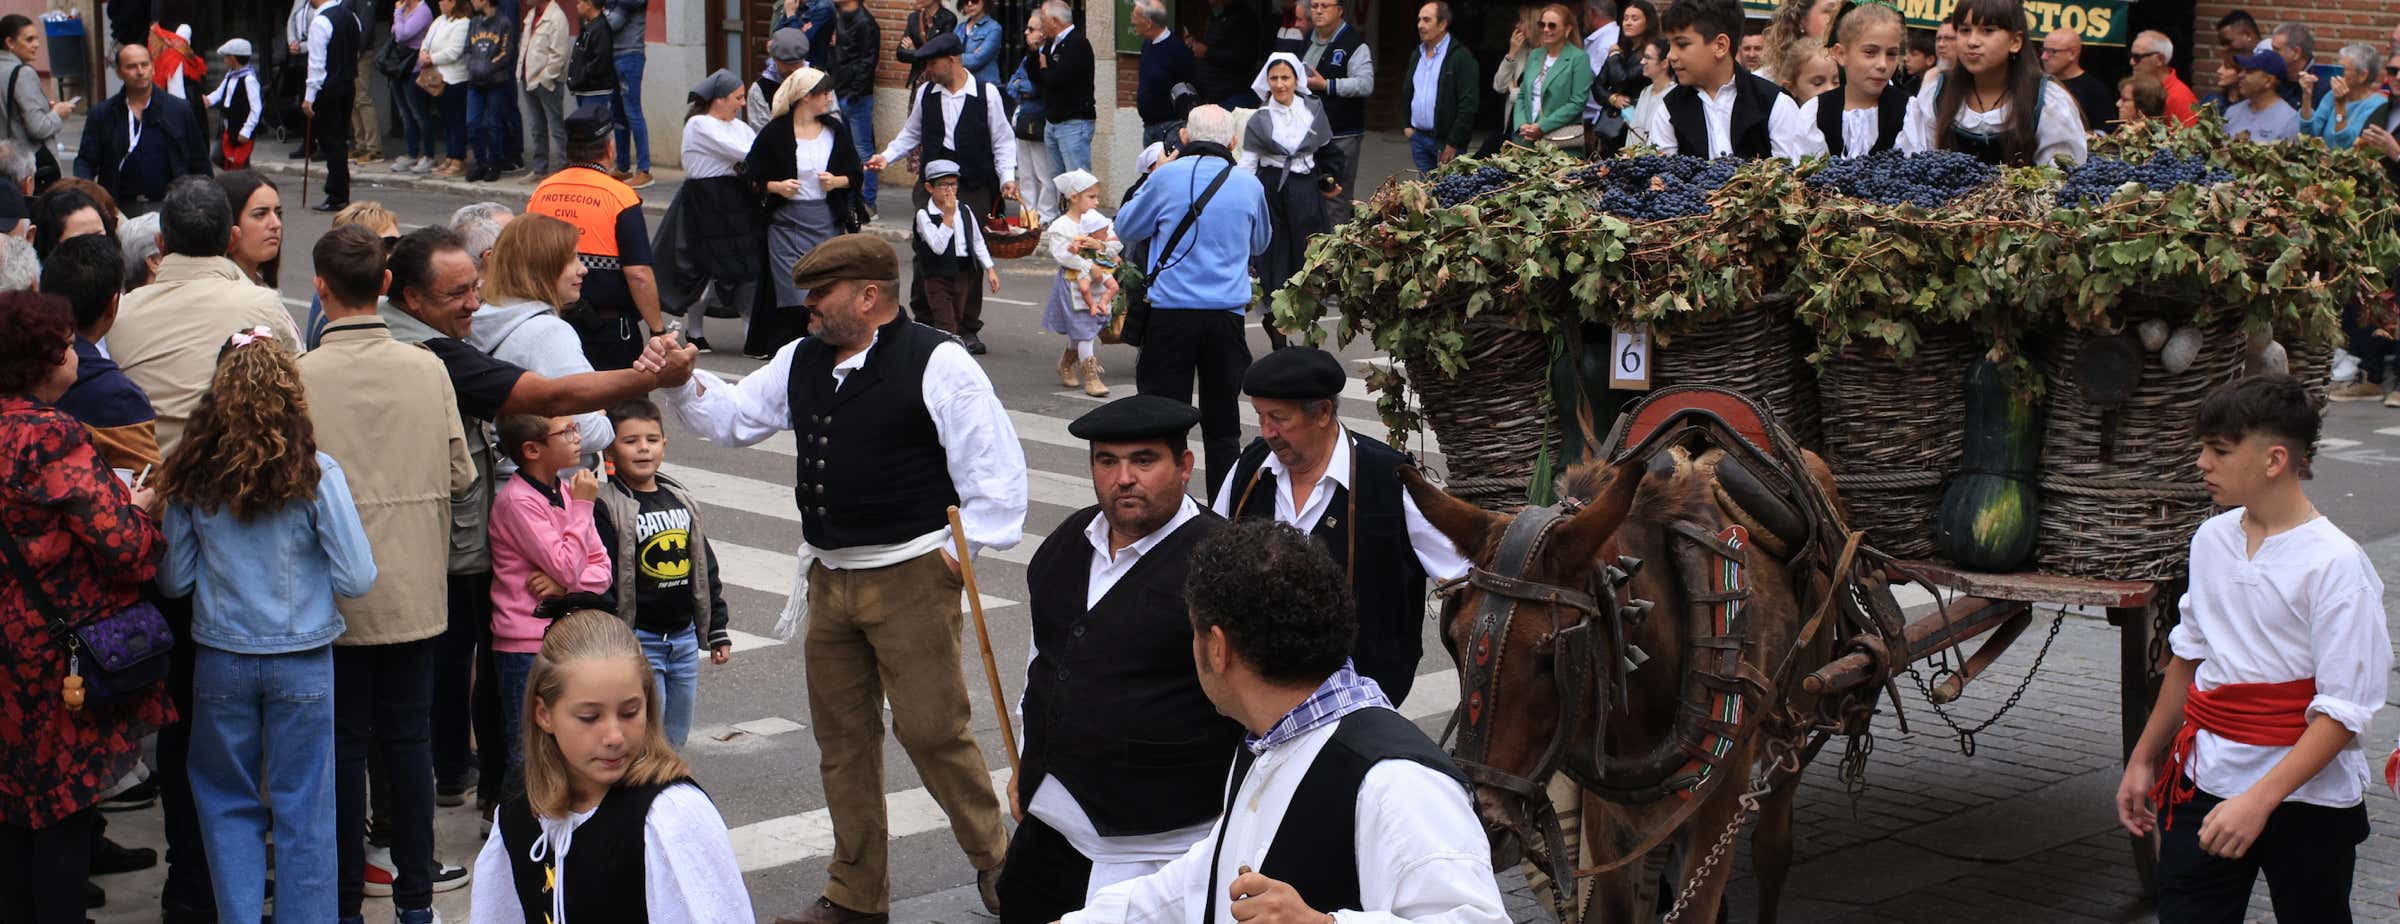 Η εικόνα δείχνει πολλούς εορτάζοντες ανθρώπους κατά τη διάρκεια της γιορτής κρασιού και της παρέλασης στο Toro. Ένα παραδοσιακό ξύλινο κάρο γεμάτο με σταφύλια και κολοκύθες σέρνεται από ένα γαϊδουράκι.